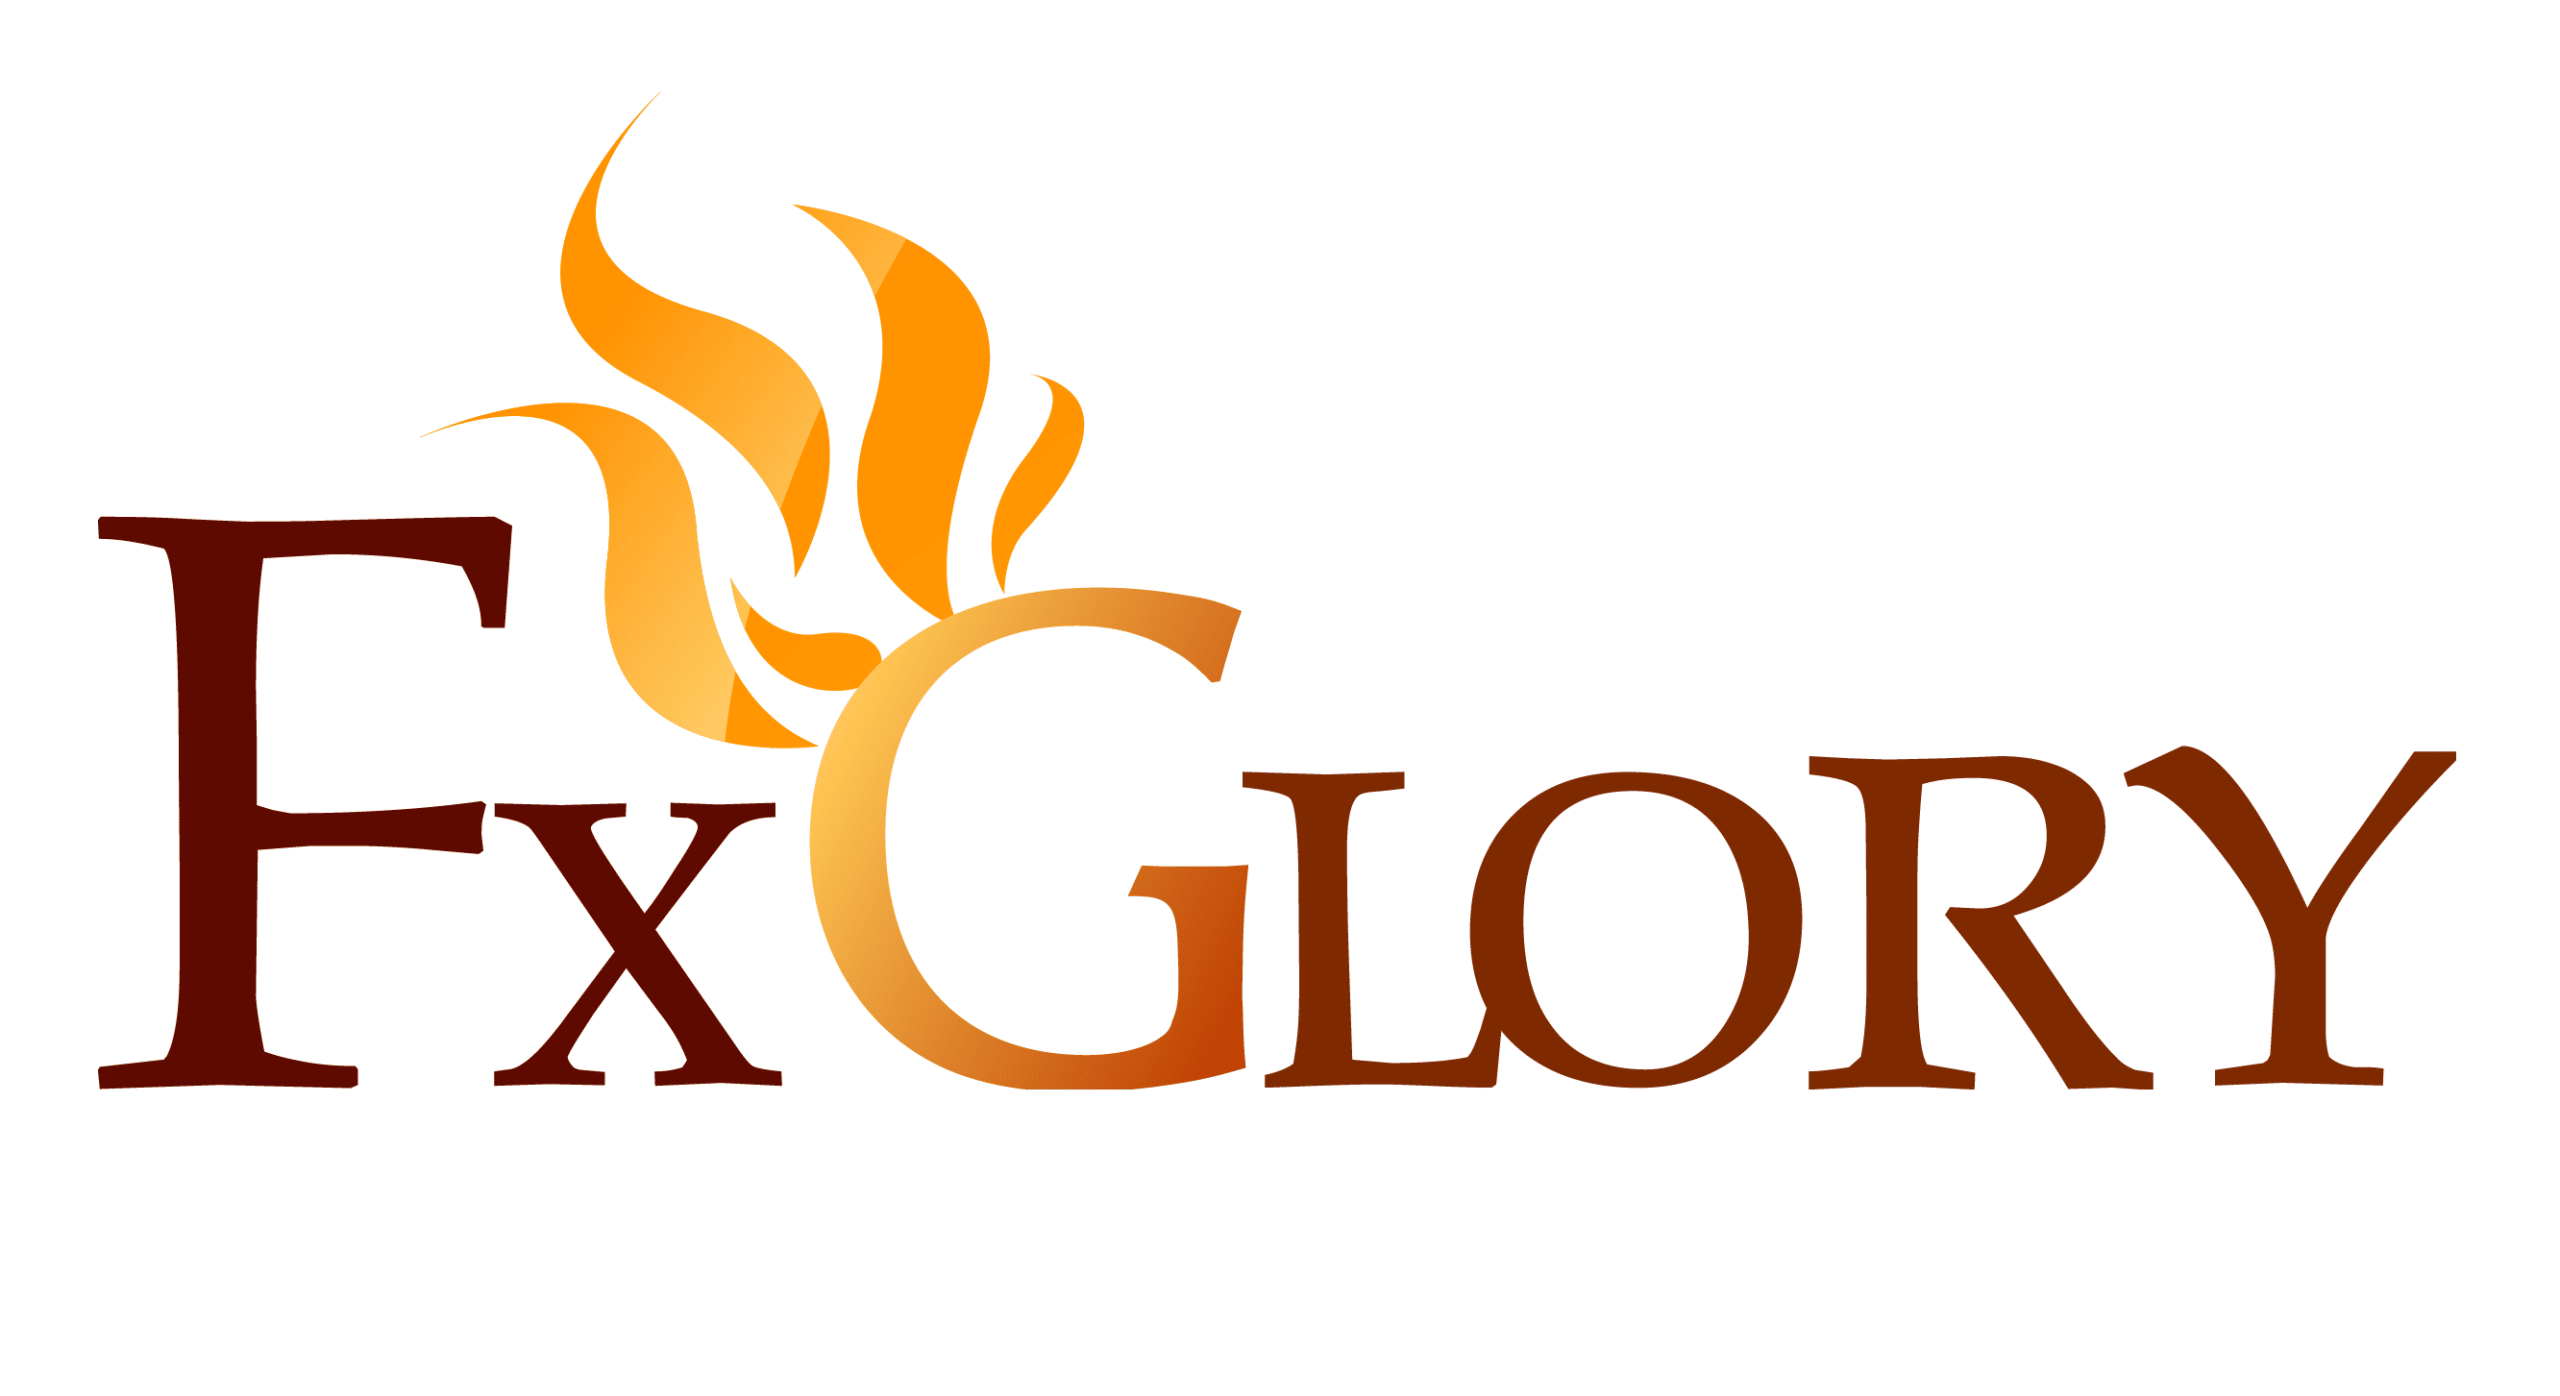 fxglory review logo